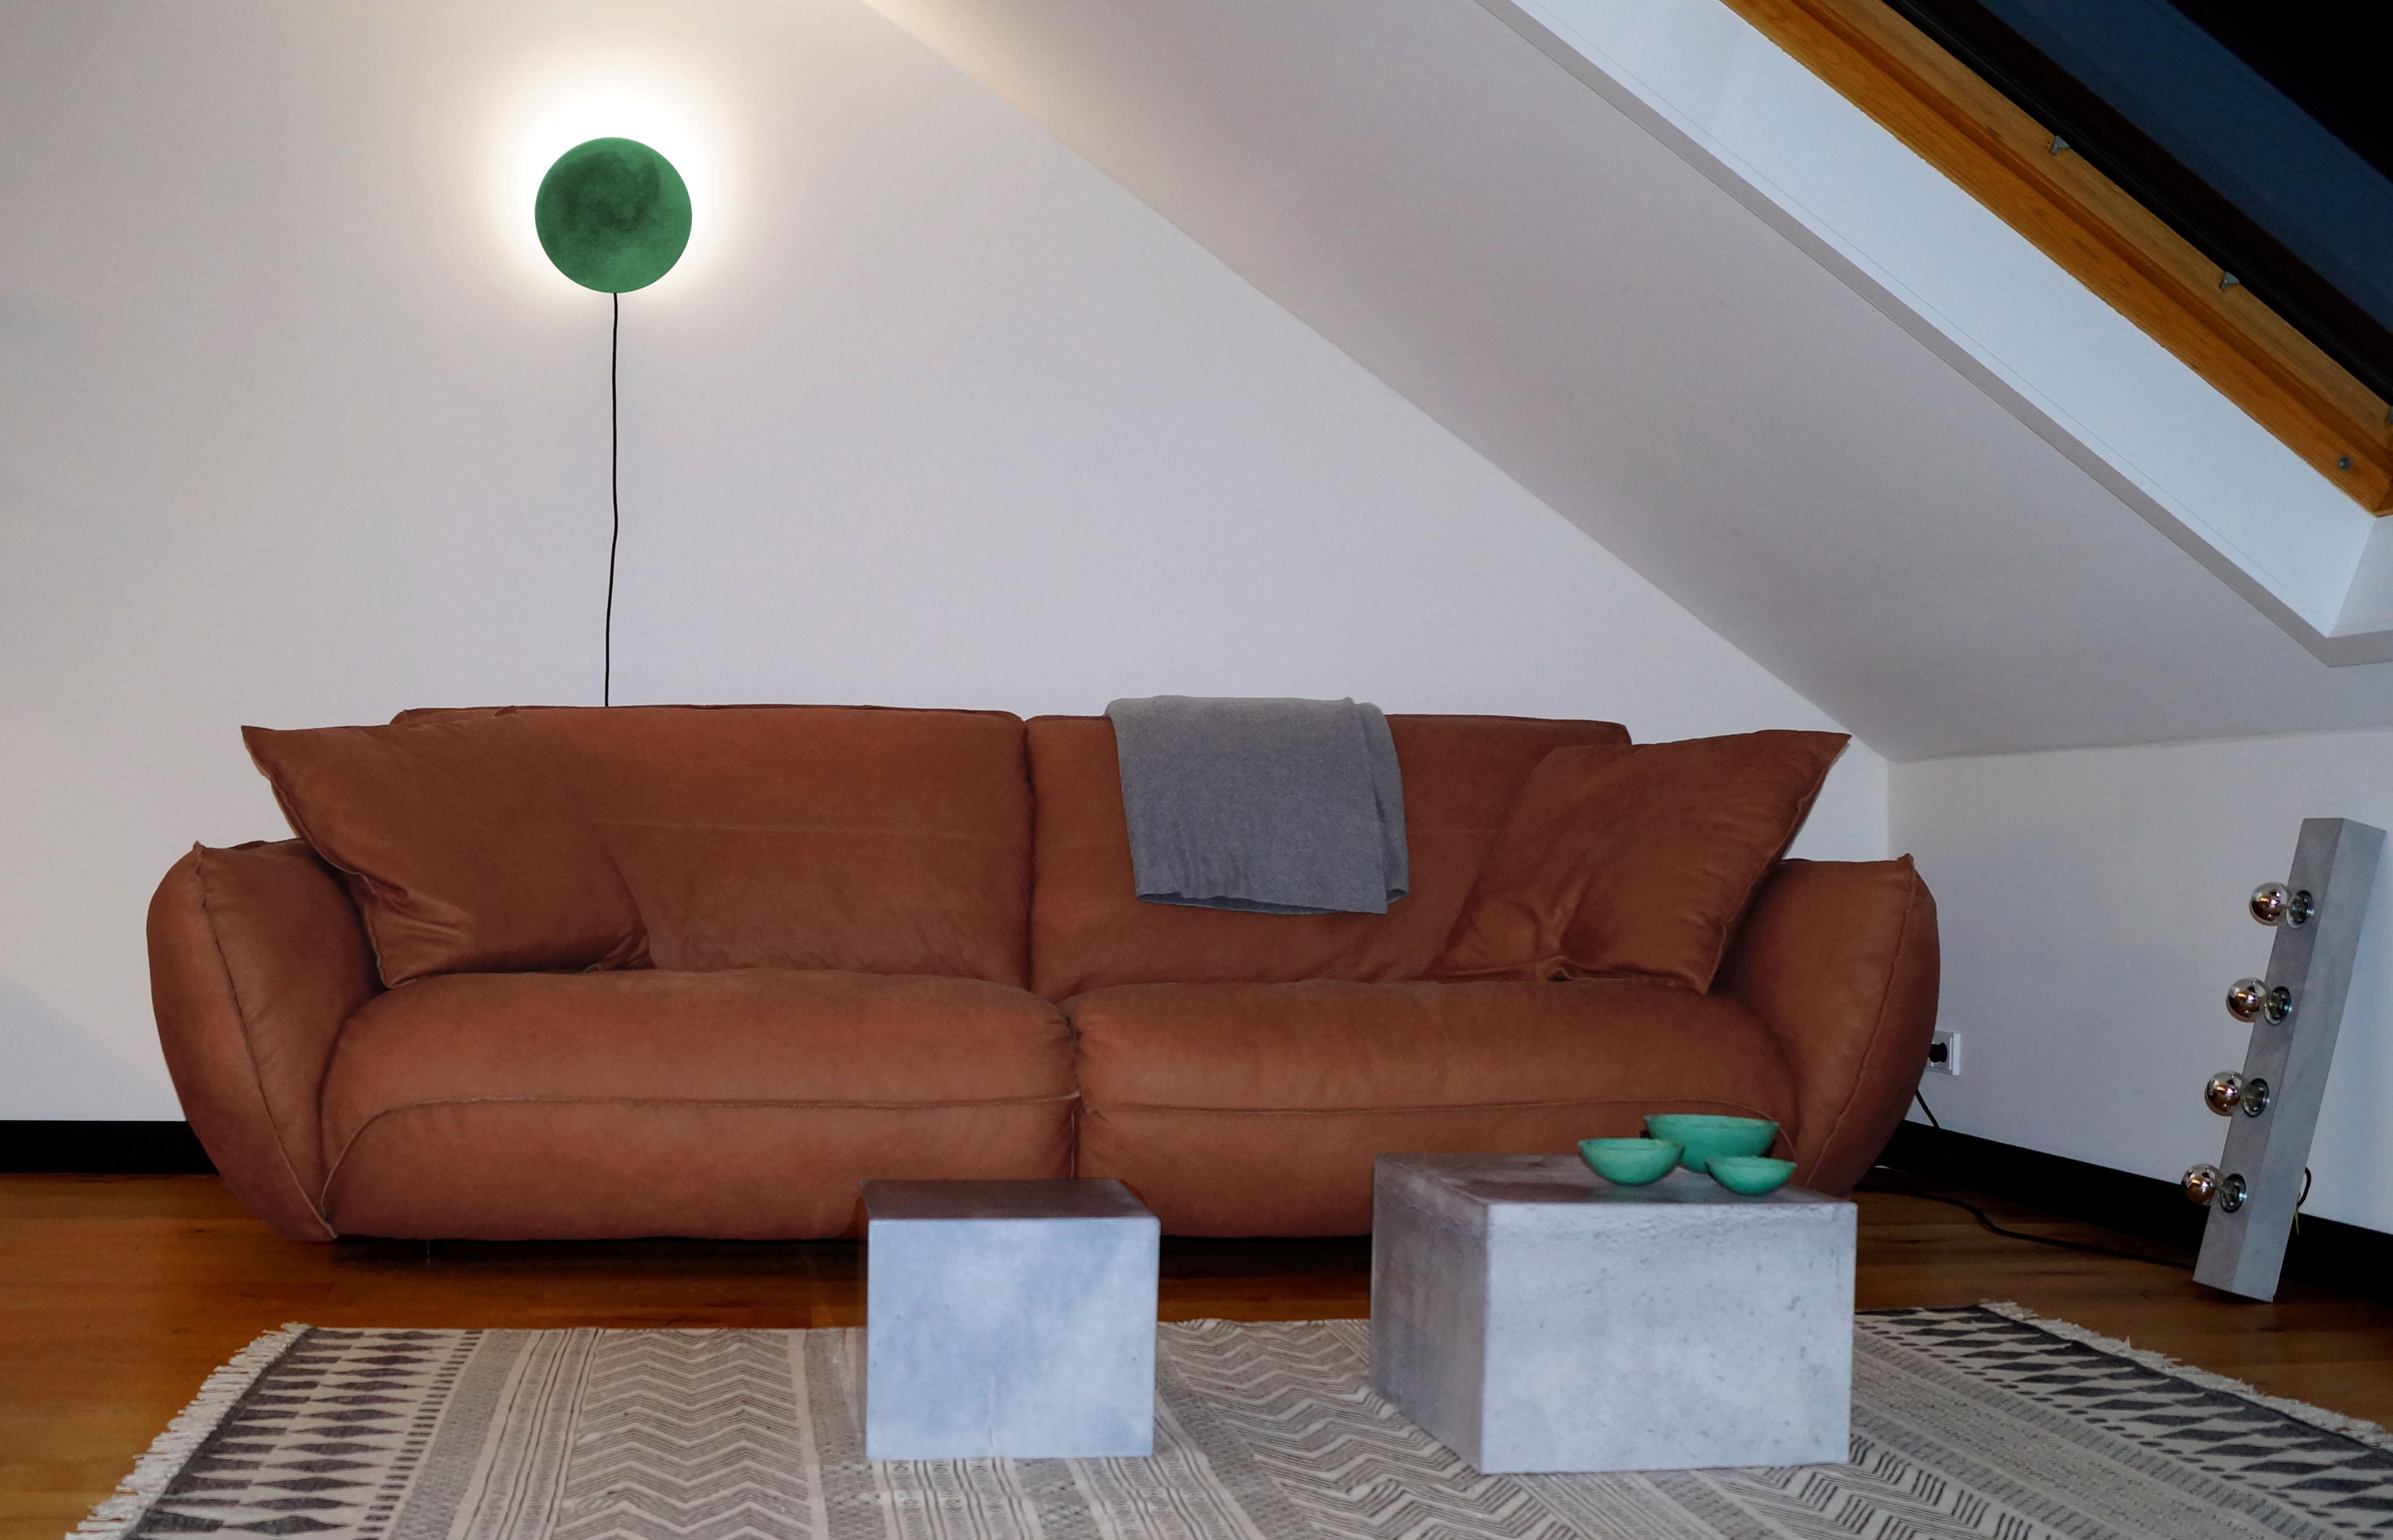 Beton kann auch wohnlich!!! #moderneswohnzimmer ©fattoAmano - lebemitbetonung.de